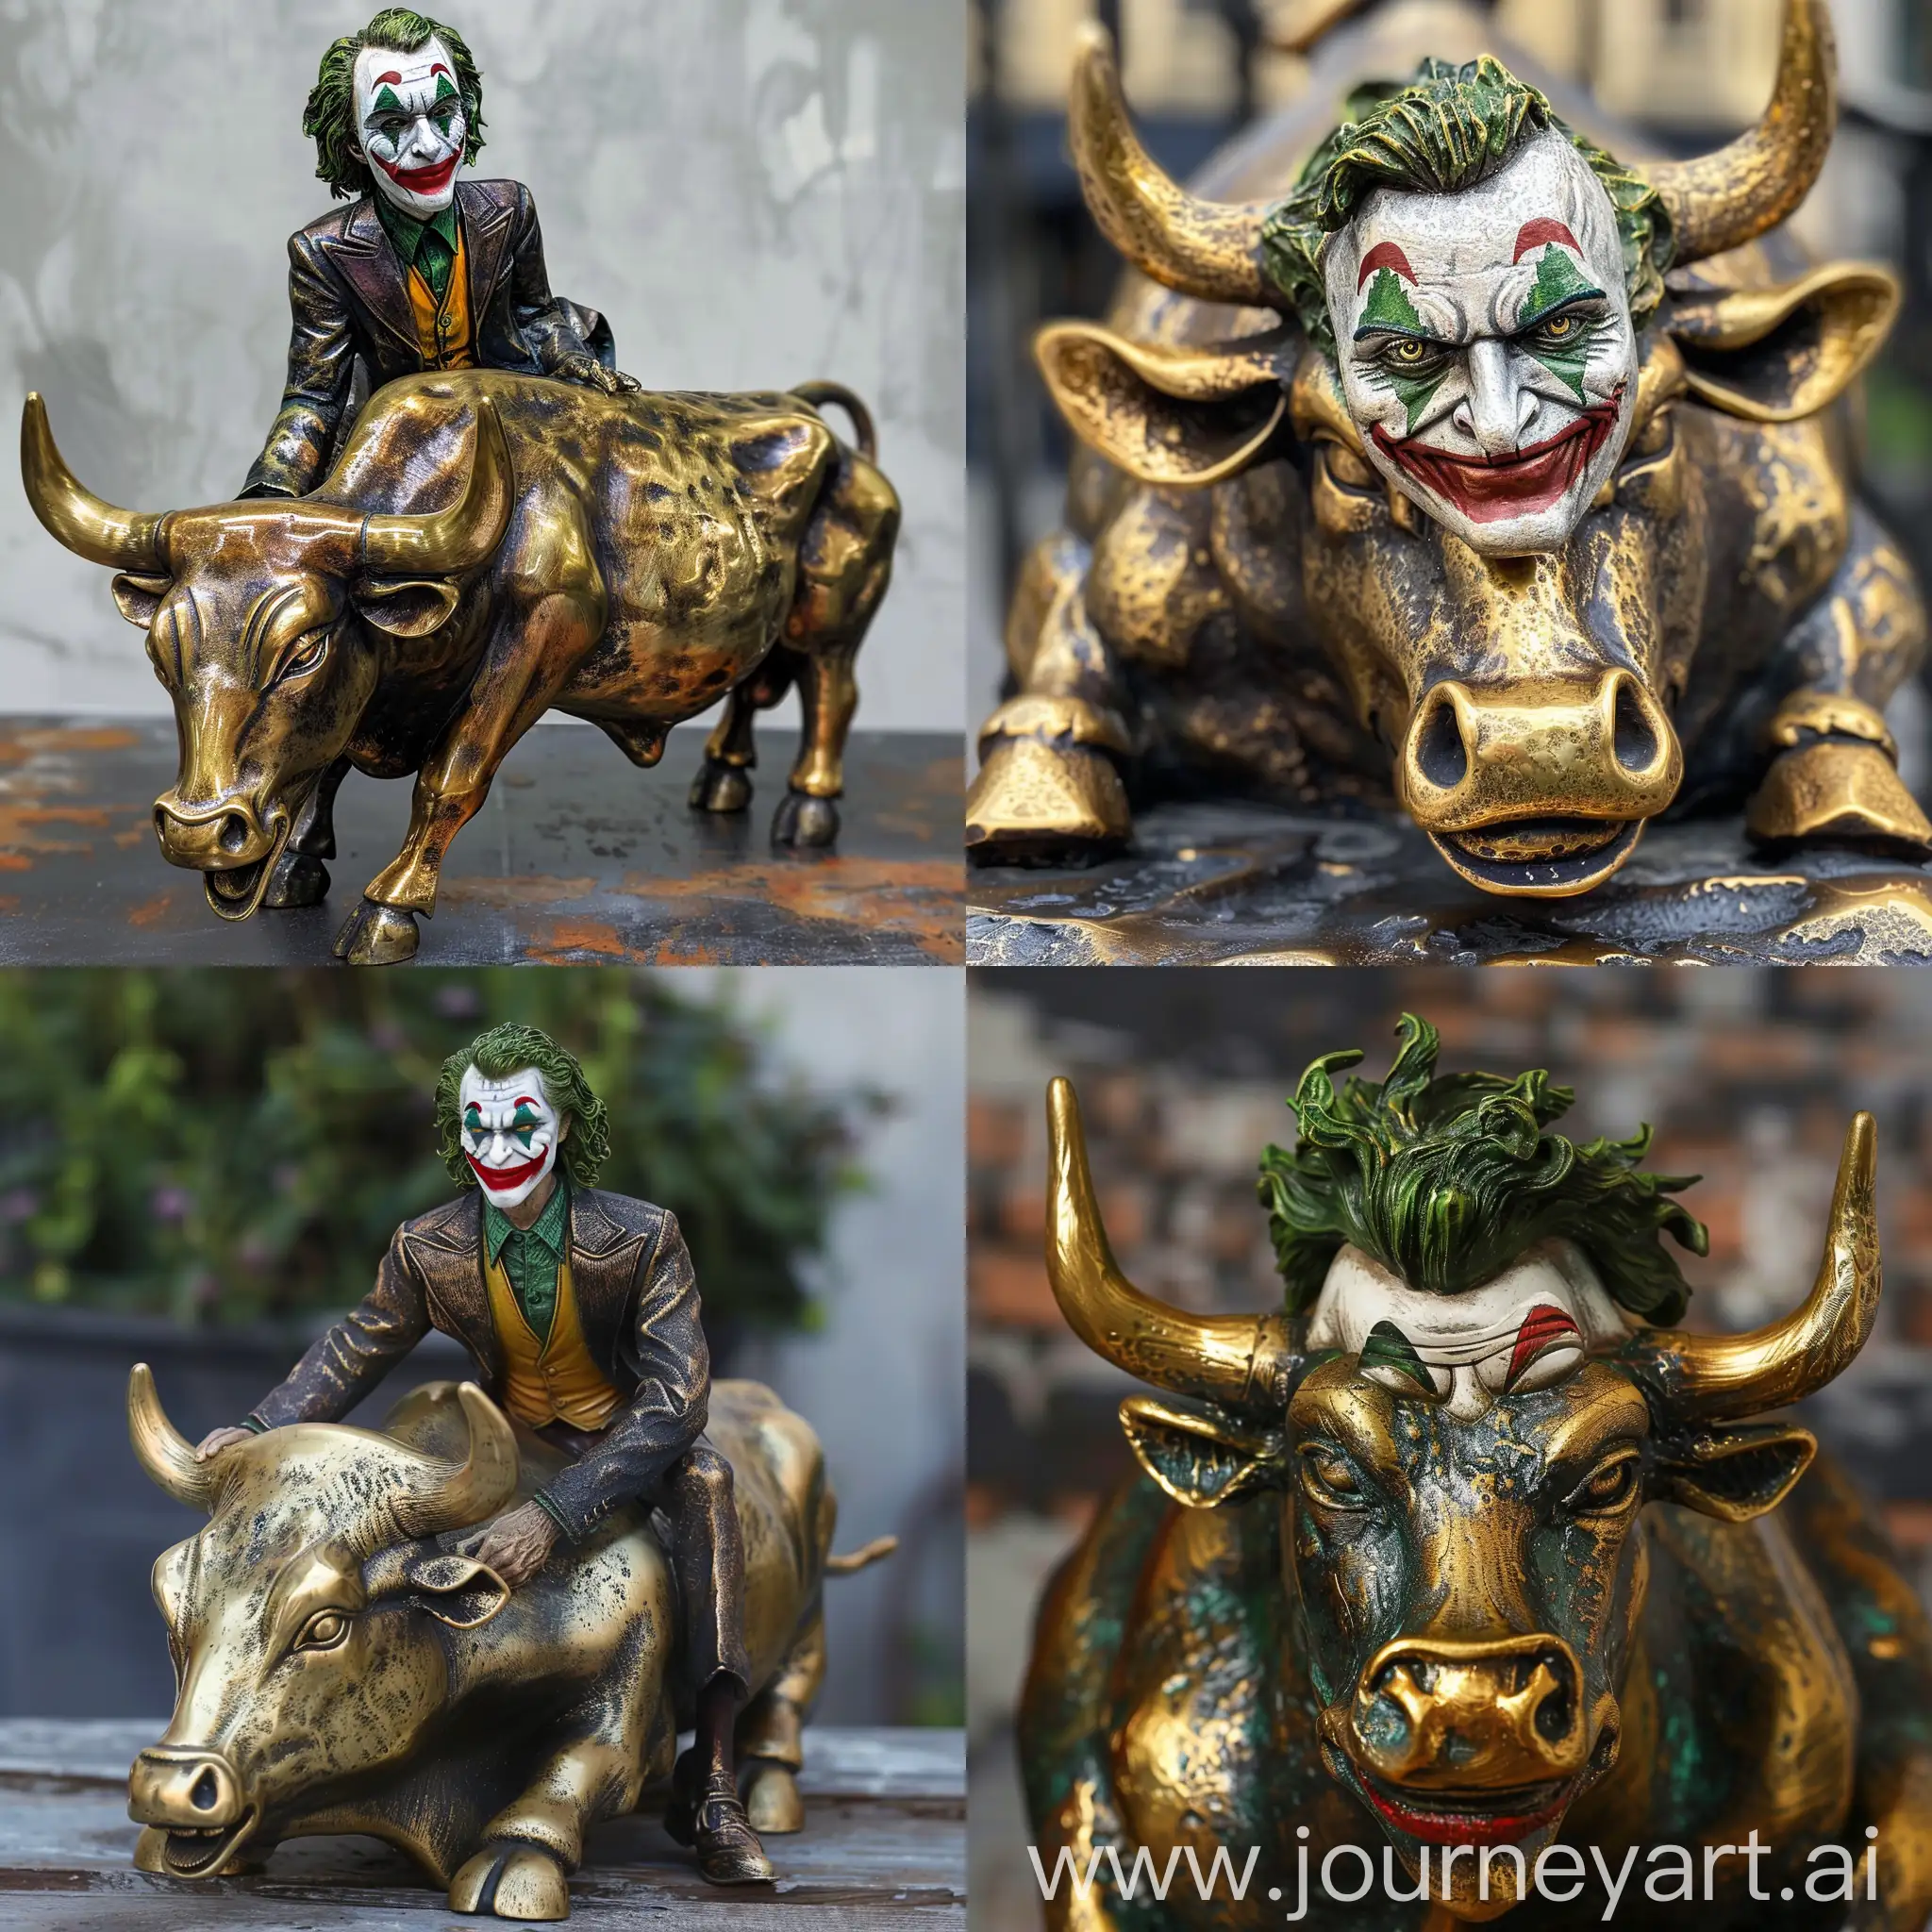 Joker-Riding-Brass-Bull-in-Carnival-Funfair